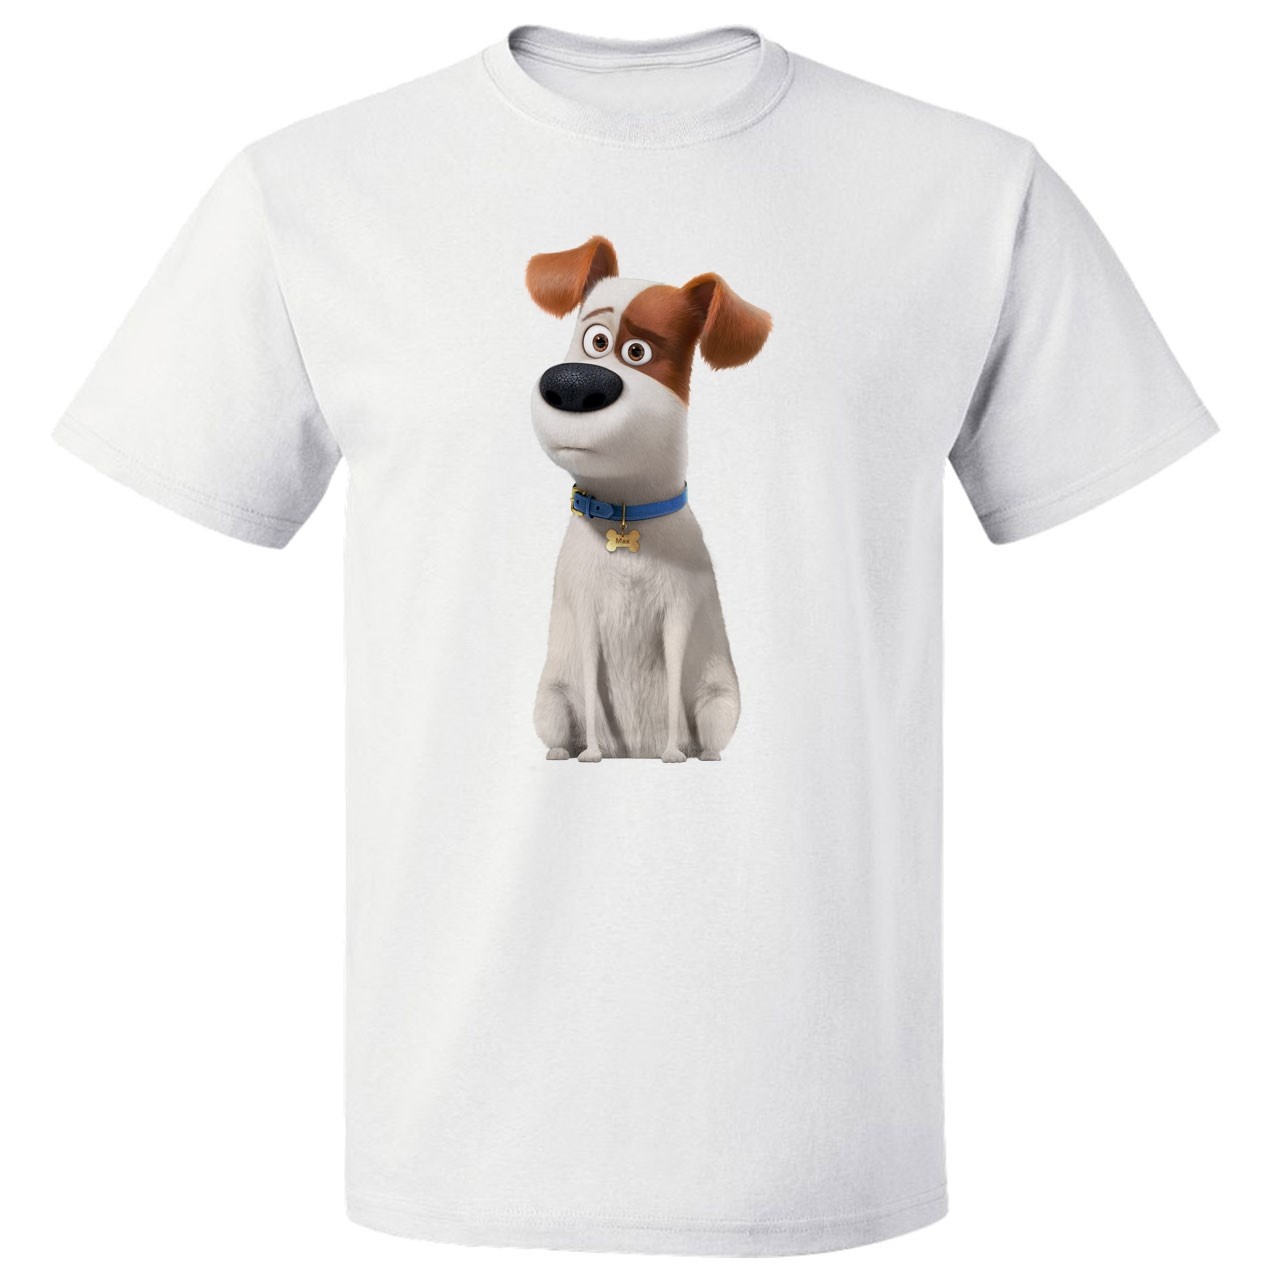 تی شرت پارس طرح کارتونی سگ کد 7109